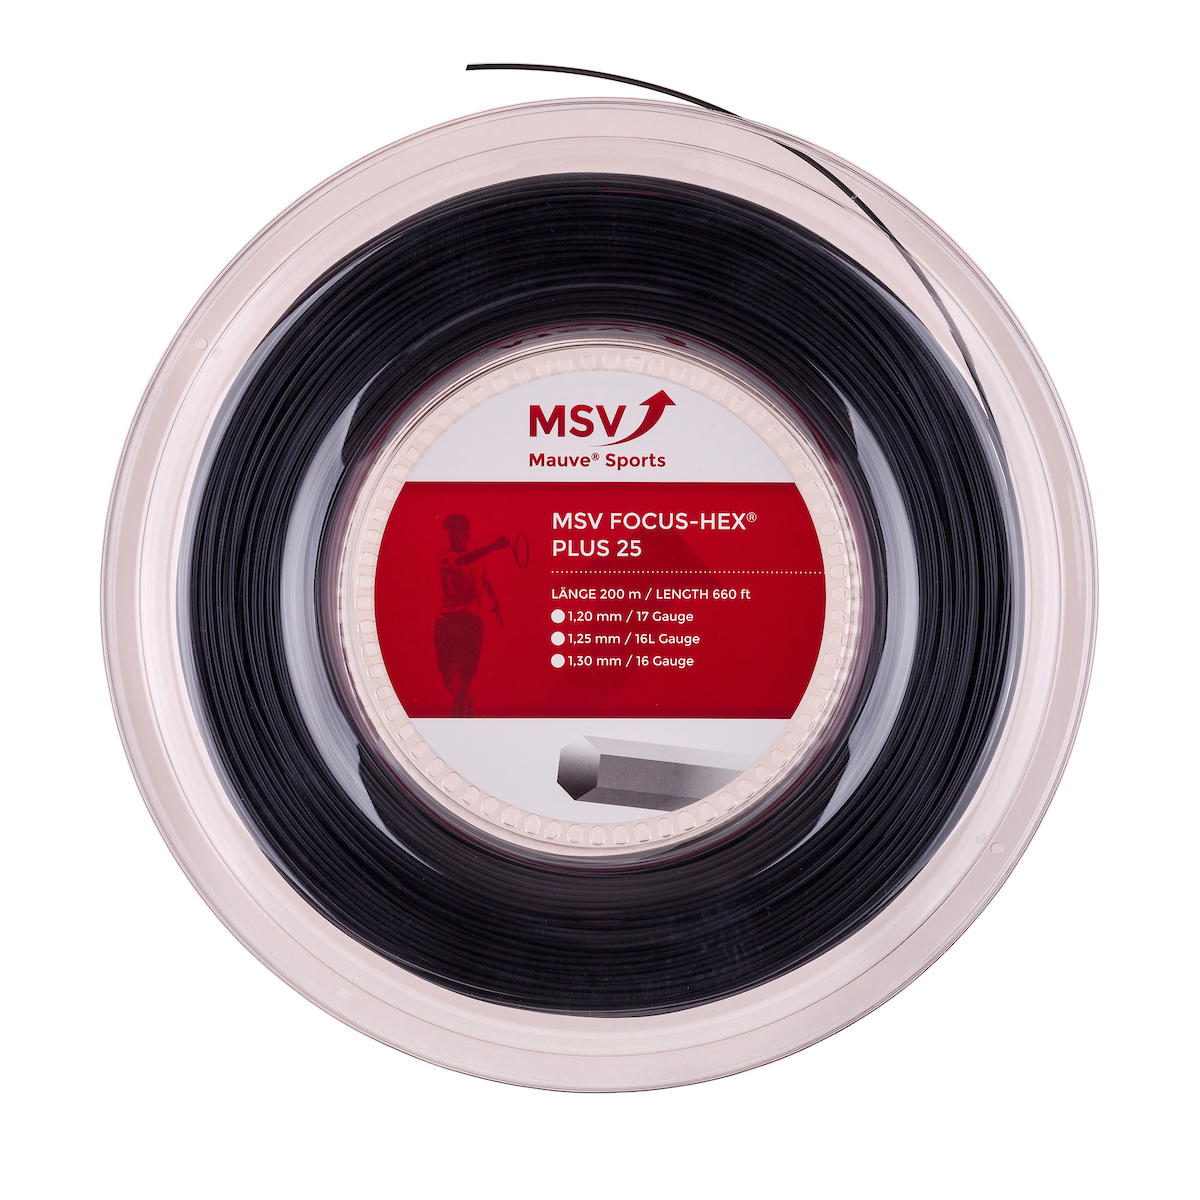 Mauve MSV Focus-Hex Plus 25 schwarz, 200m